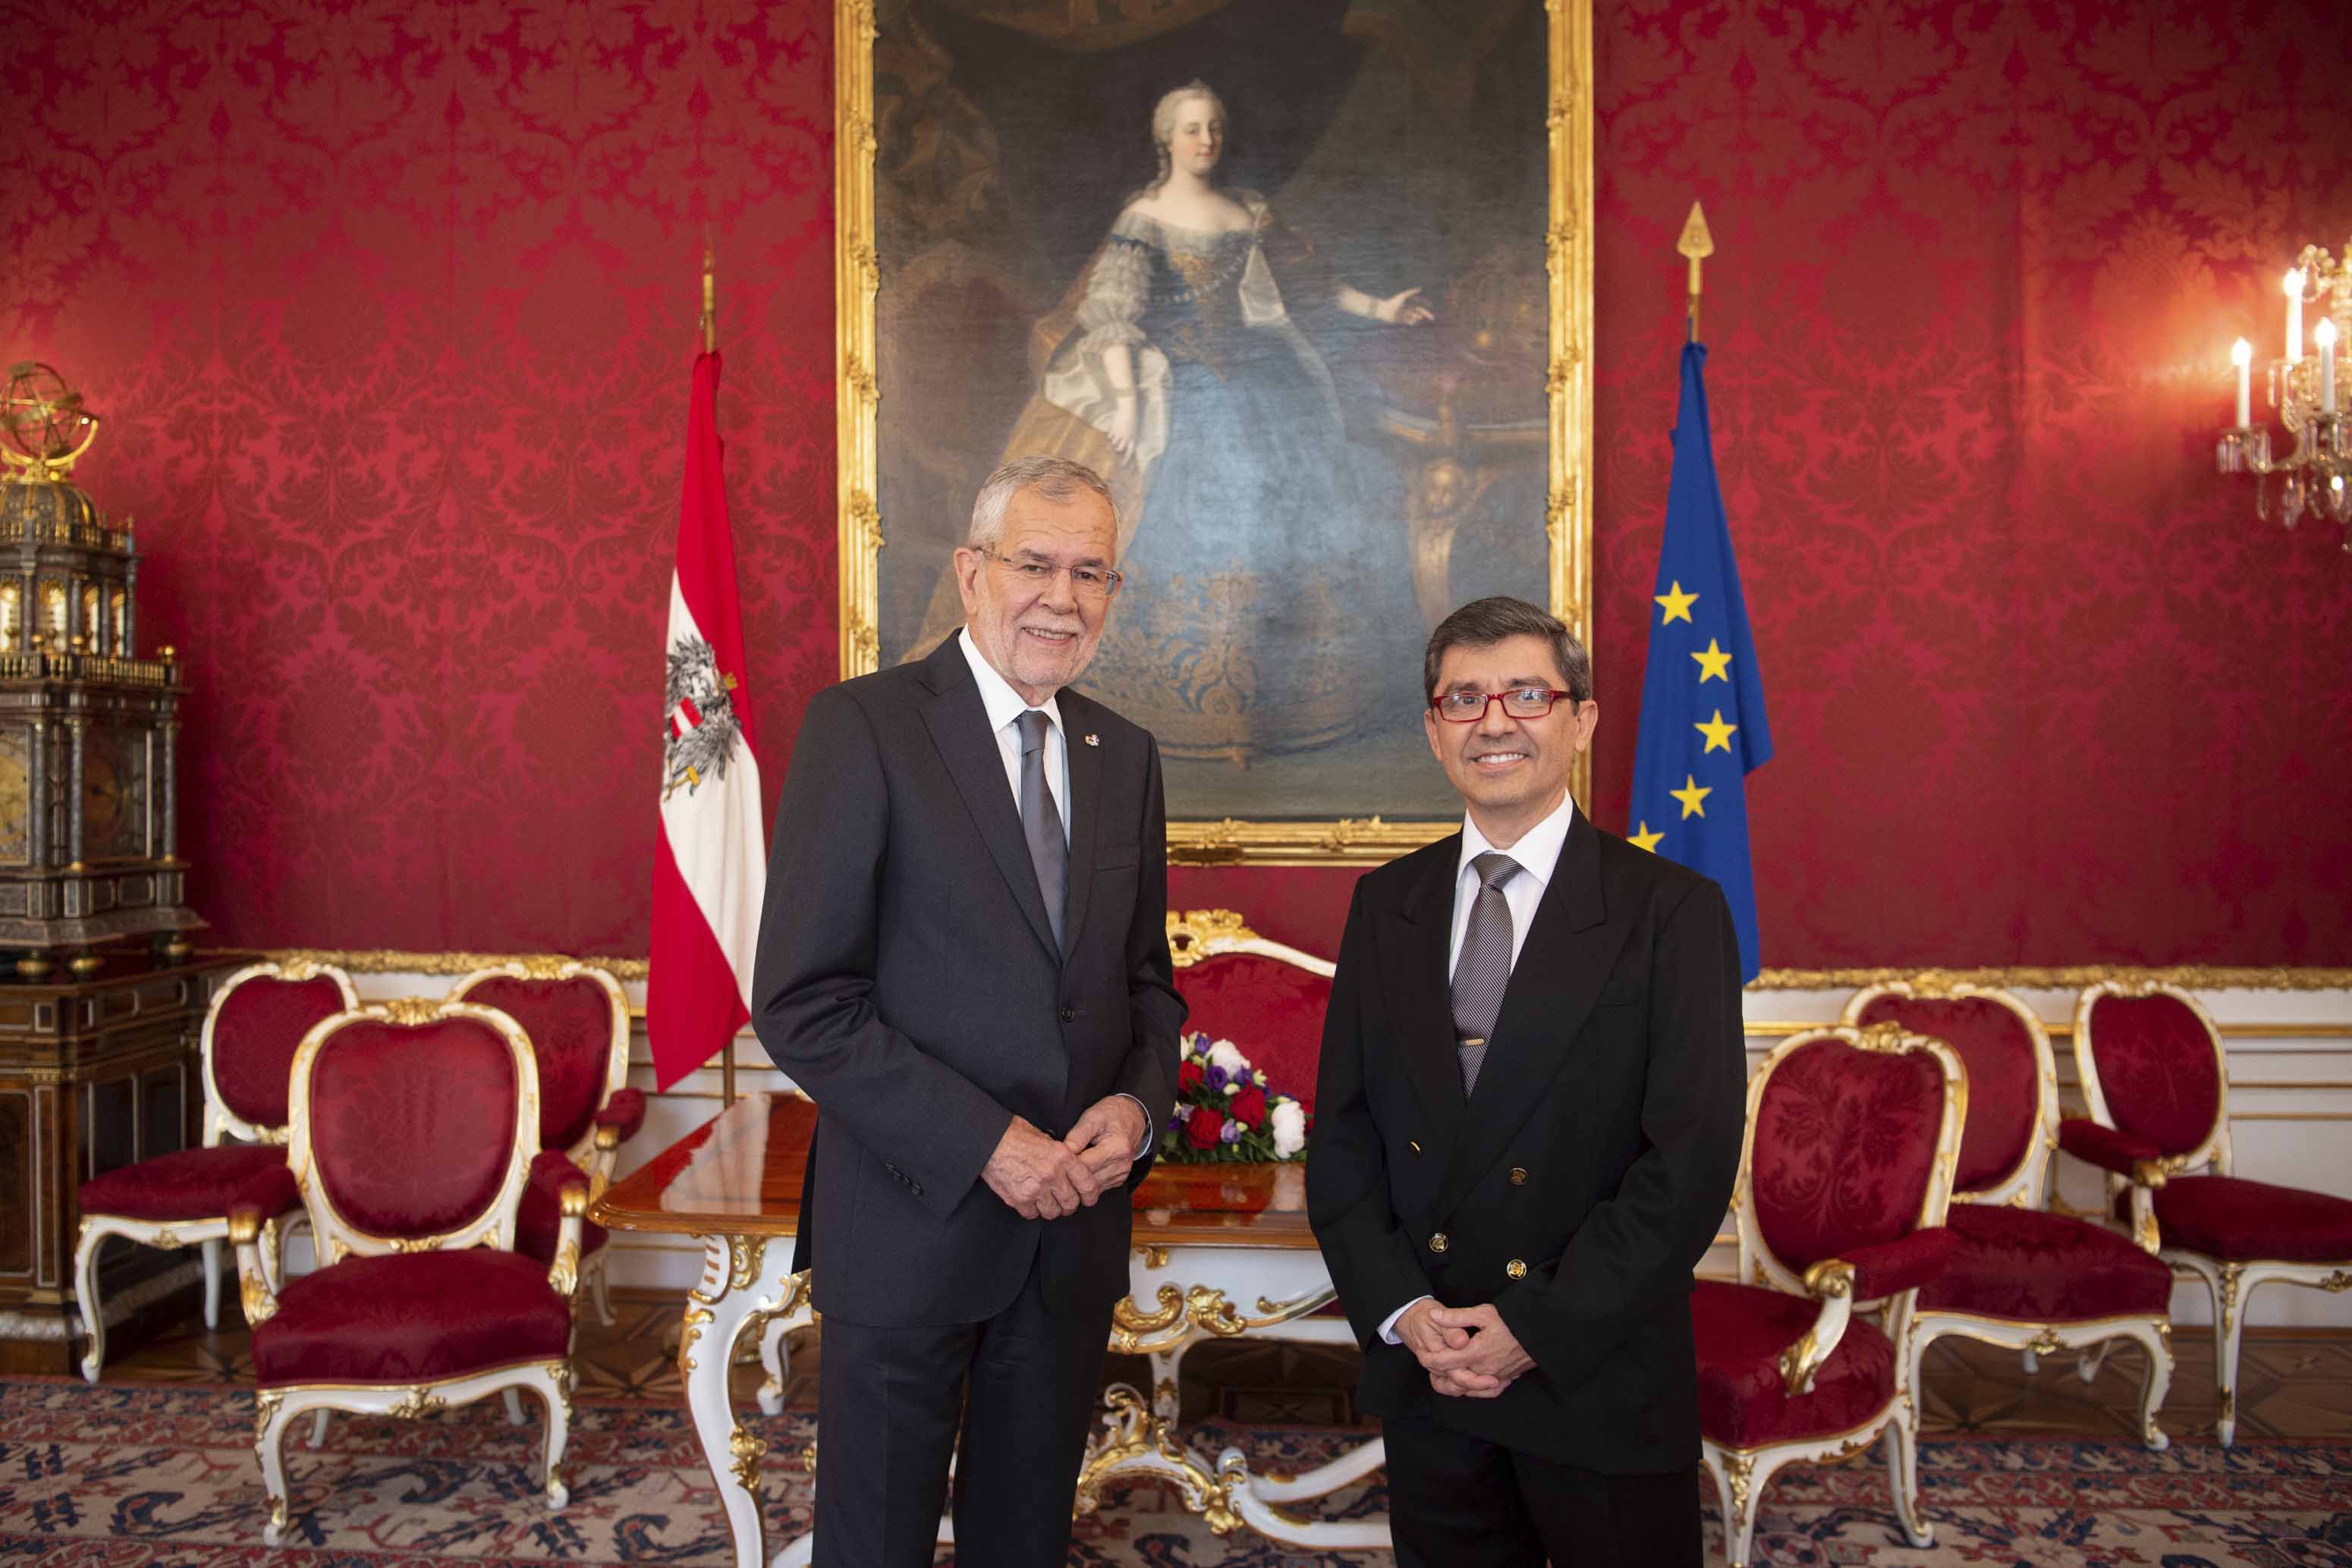 Embajador Facetti presentó sus Cartas Credenciales al Presidente Federal de Austria